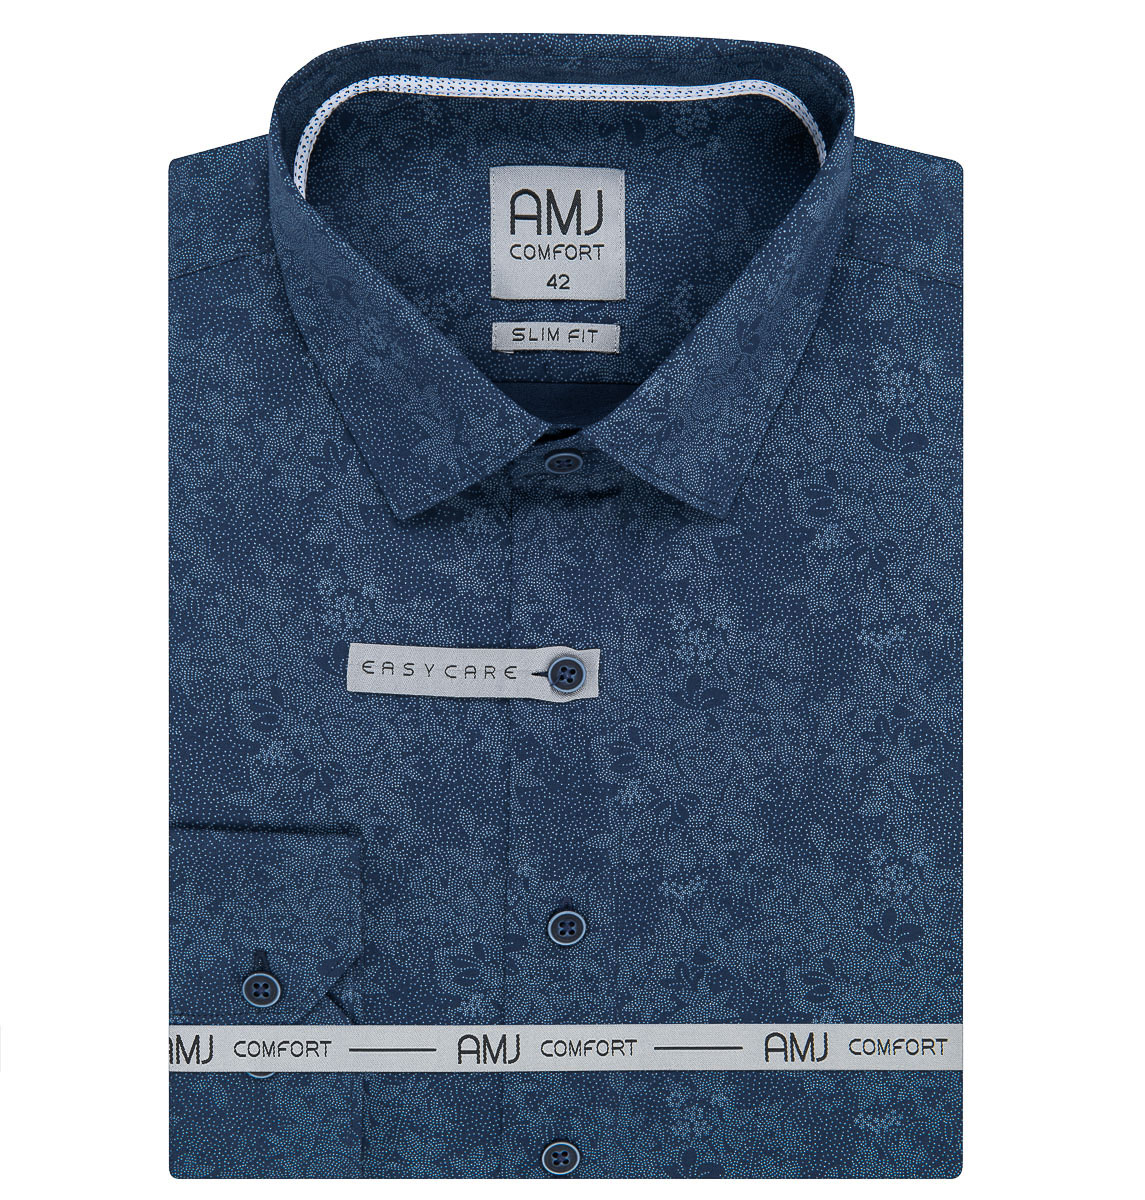 Pánská košile AMJ bavlněná, modrá květovaná VDBR1221, dlouhý rukáv (slim-fit + prodloužená délka)